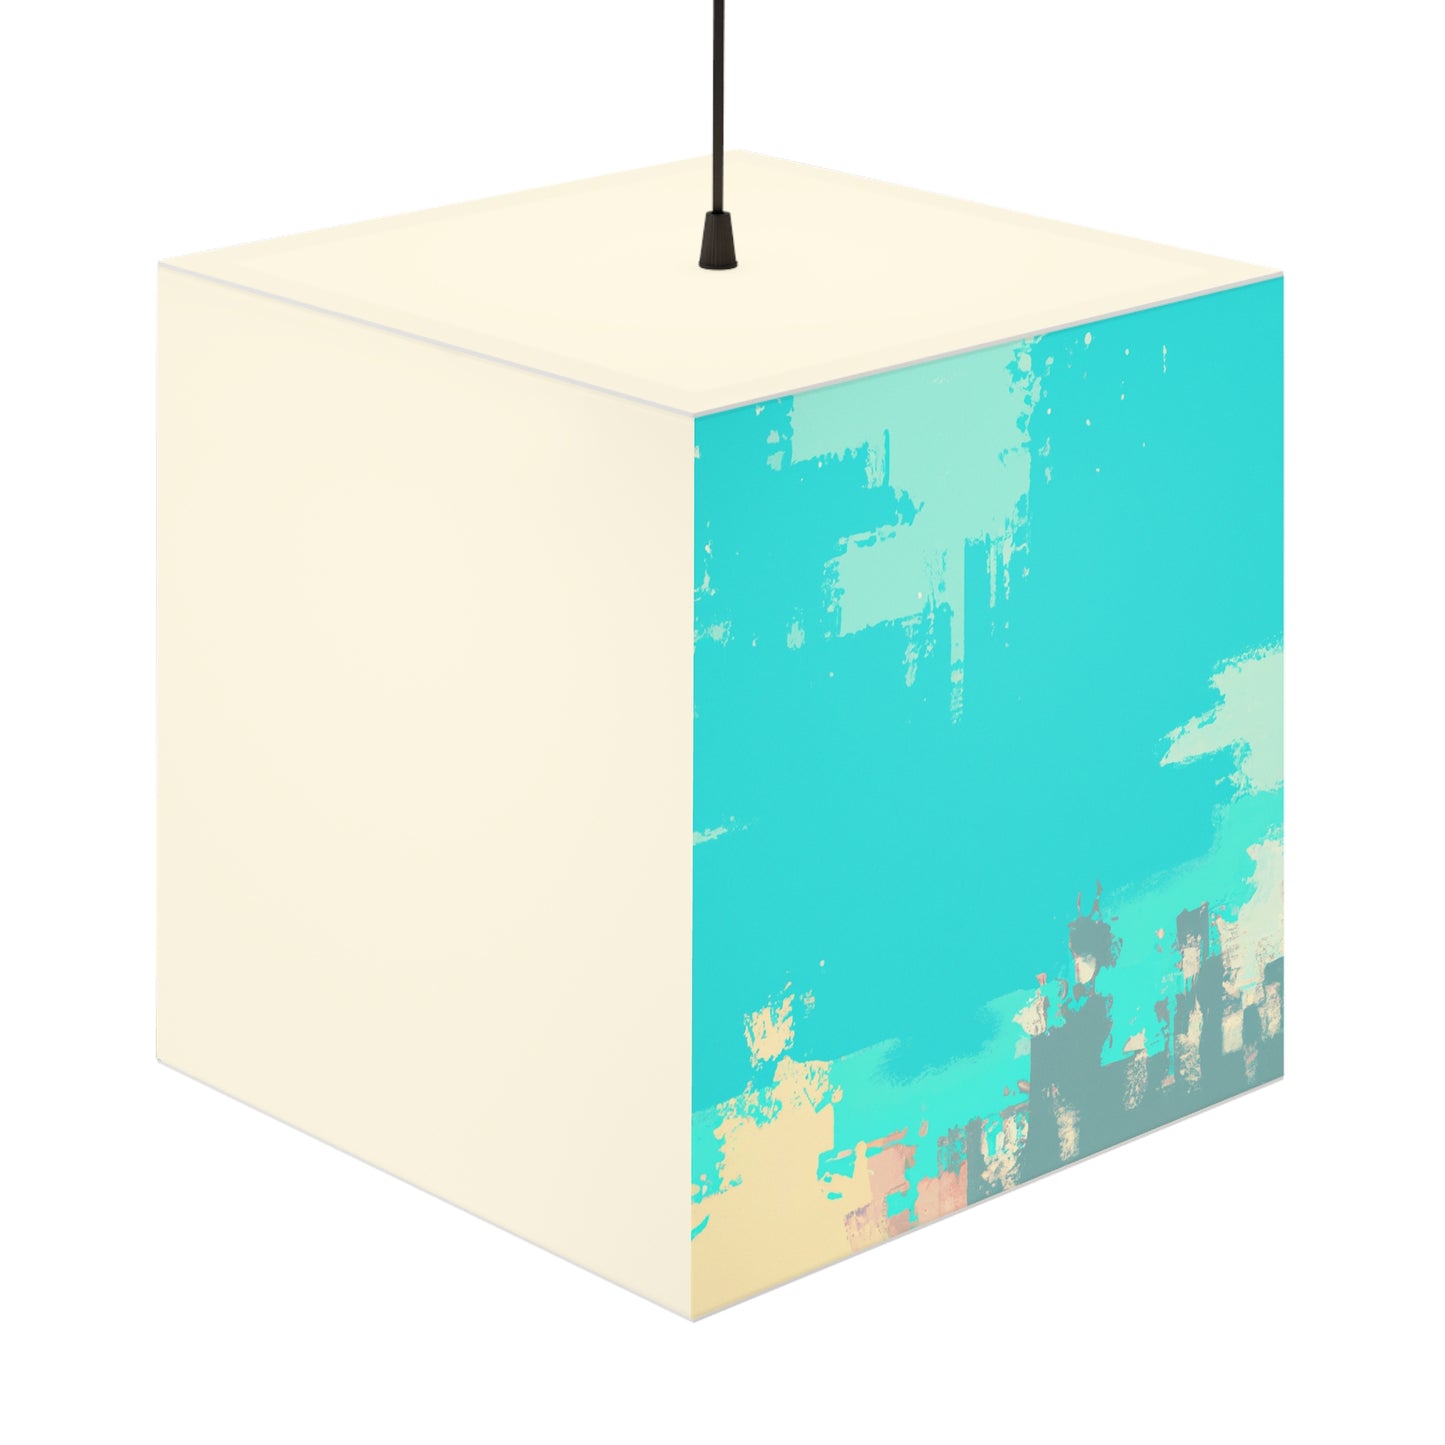 "Un paisaje ventoso: una combinación de tradición y modernidad" - La lámpara Alien Light Cube